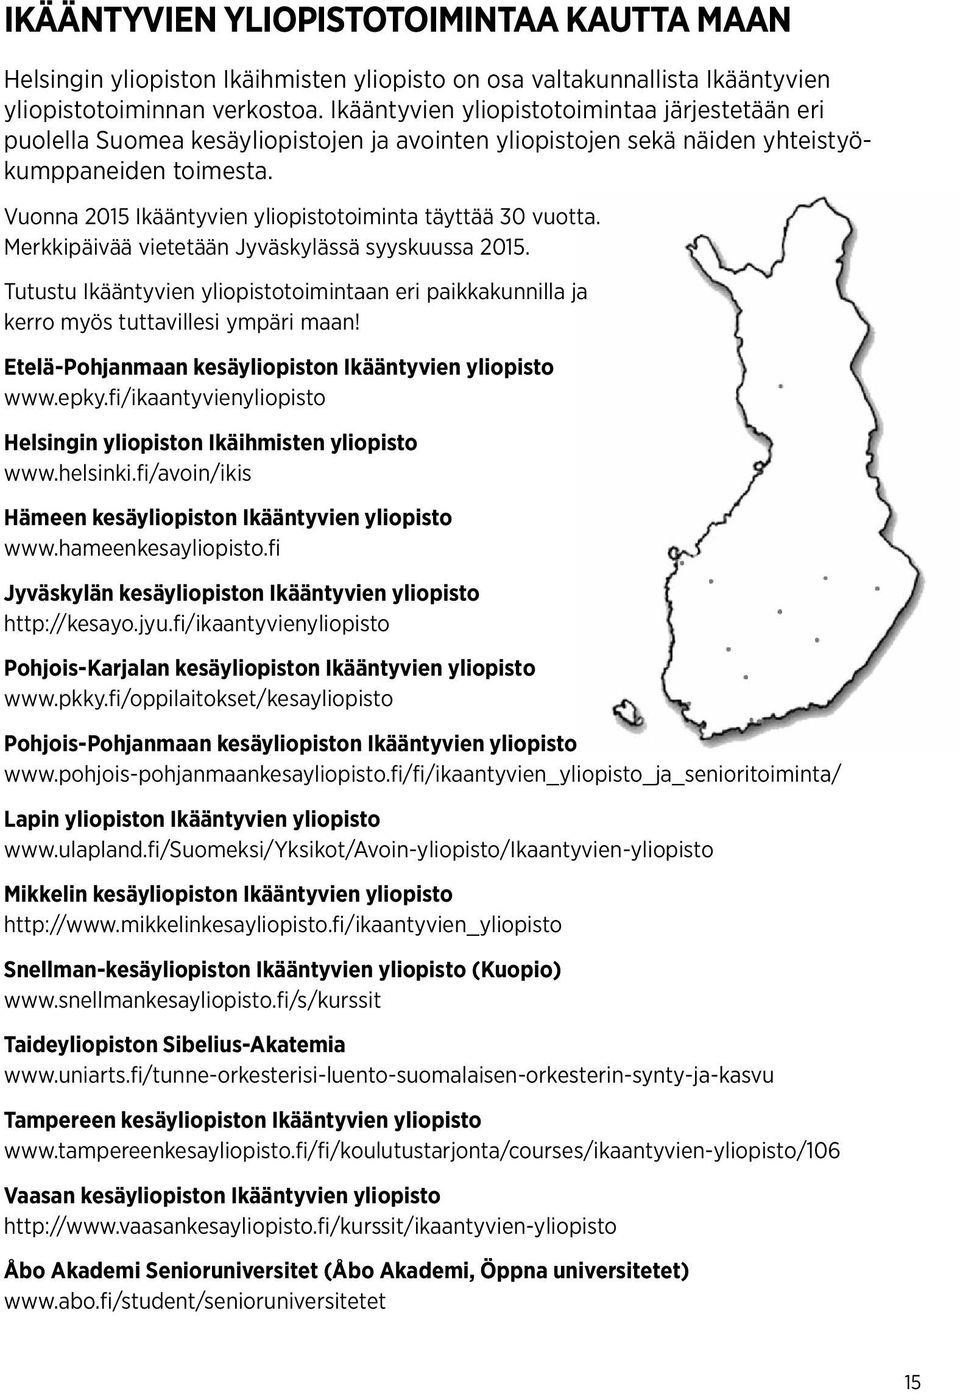 Vuonna 2015 Ikääntyvien yliopistotoiminta täyttää 30 vuotta. Merkkipäivää vietetään Jyväskylässä syyskuussa 2015.